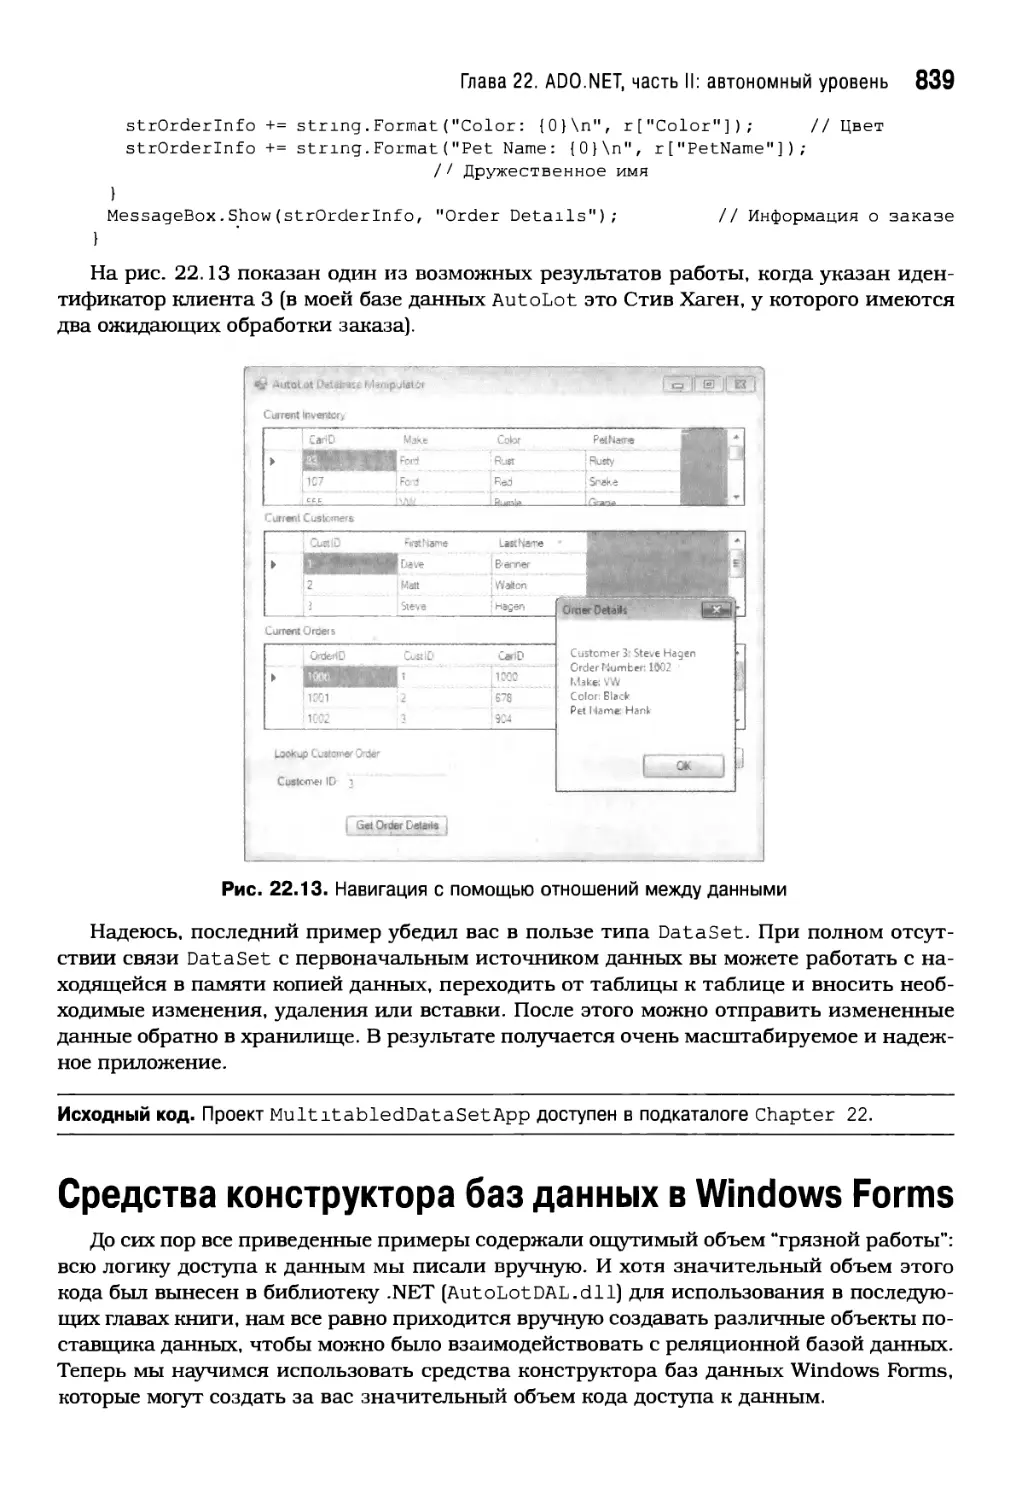 Средства конструктора баз данных в Windows Forms